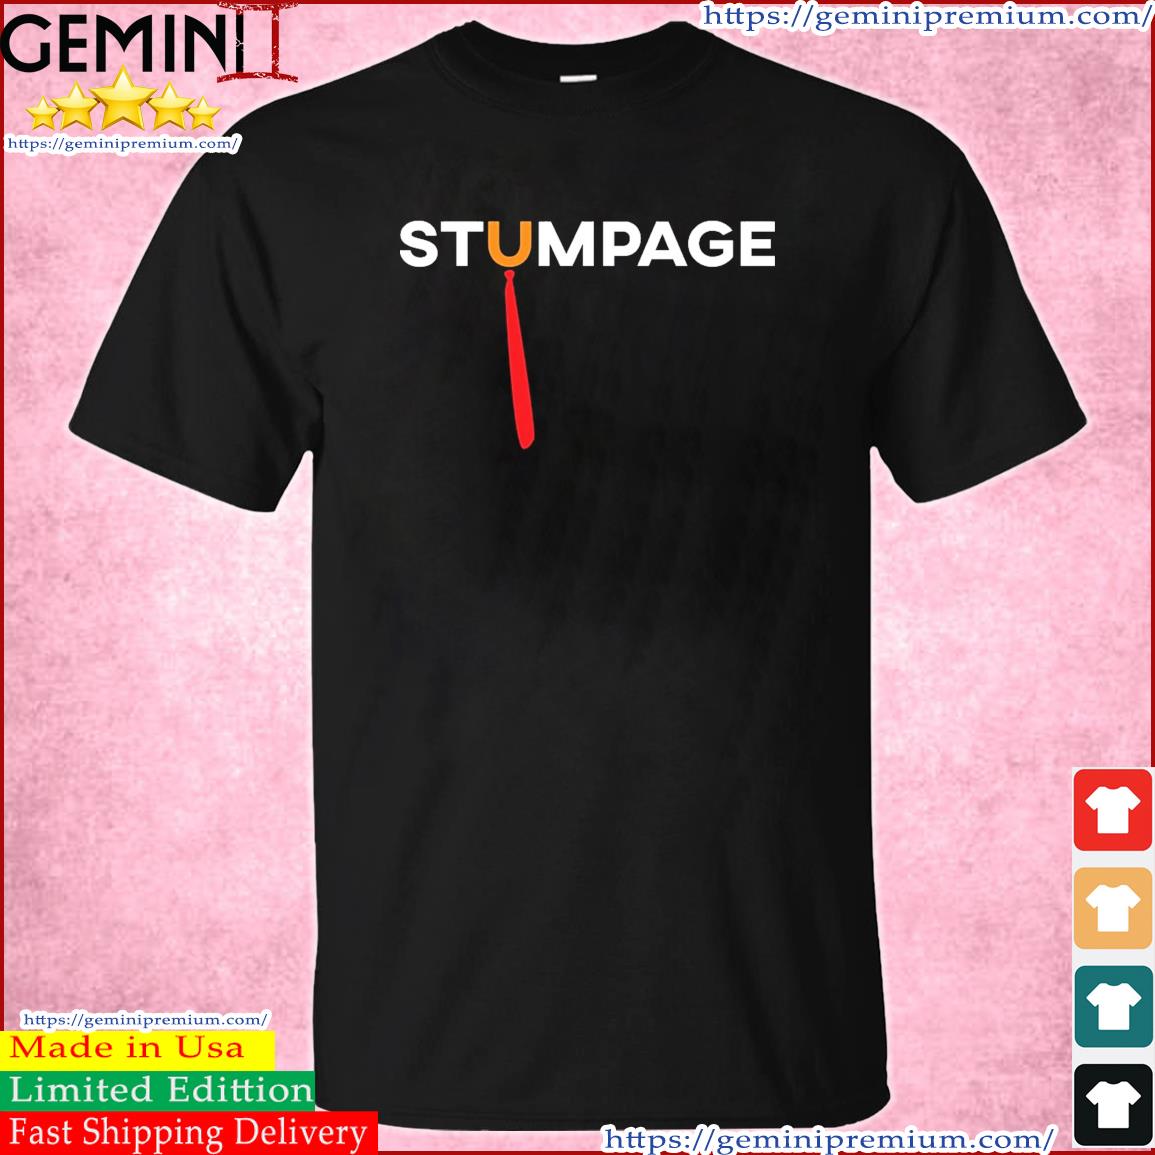 Stumpage - Anti Trump T-Shirt